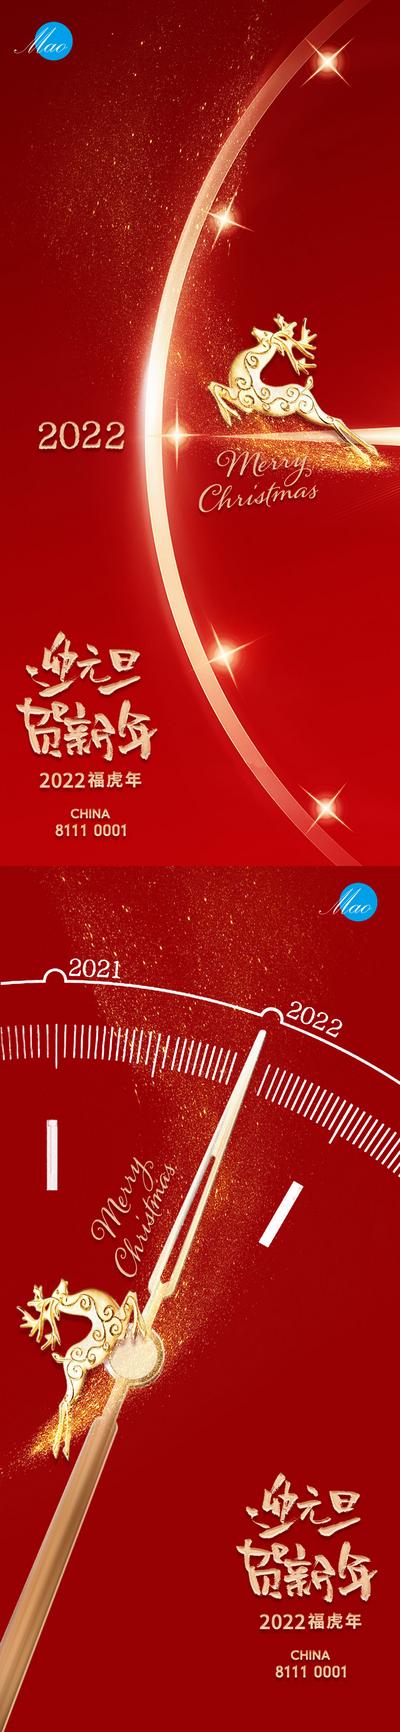 南门网 海报 公历节日 元旦 2022 跨年 时钟 红金